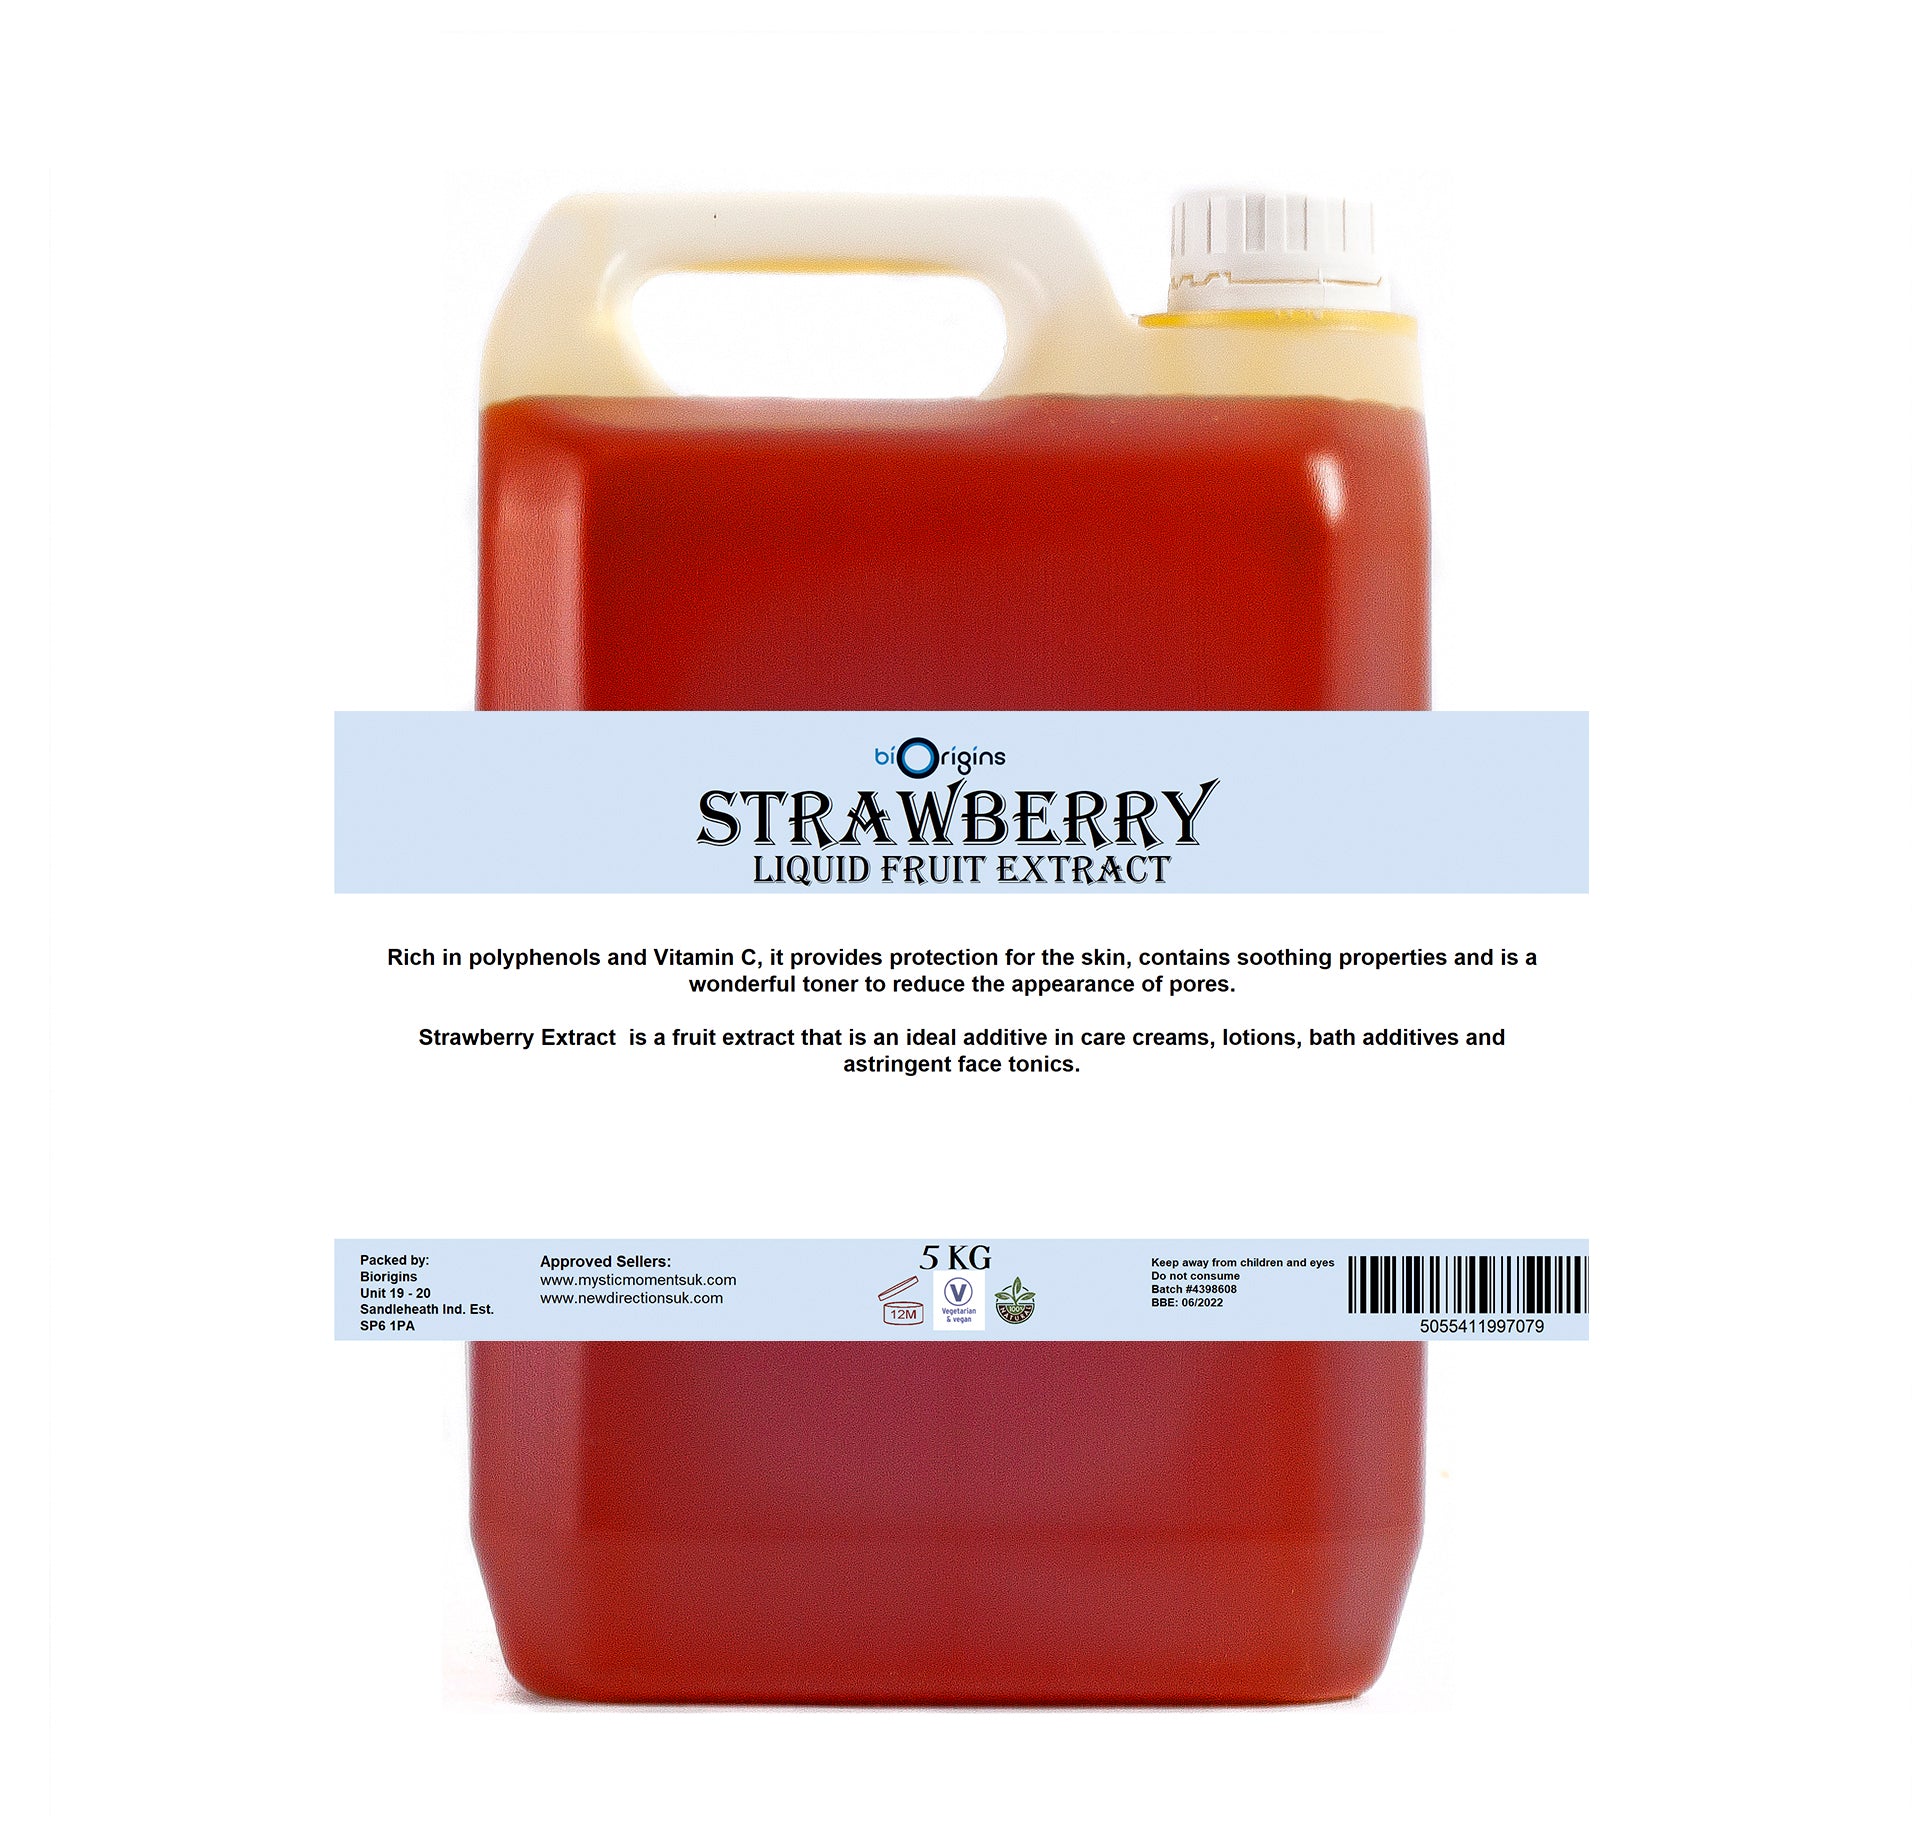 Strawberry Liquid Fruit Extract